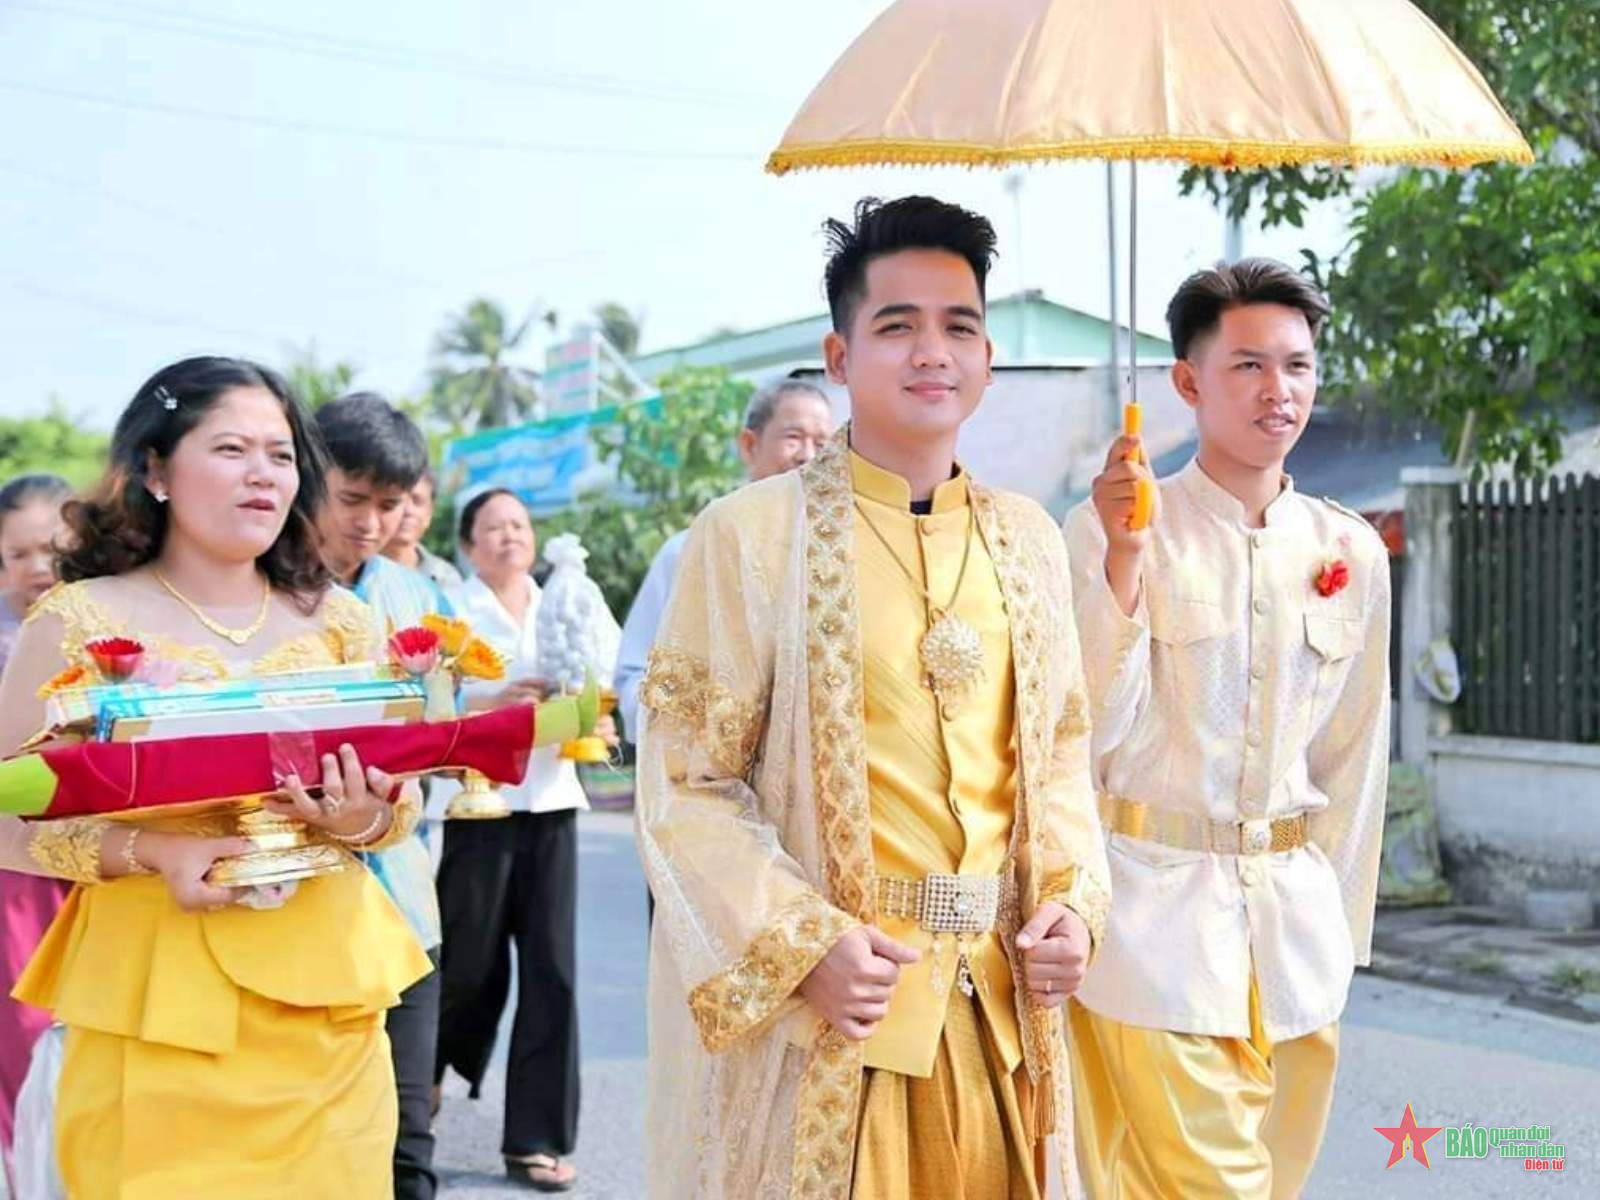 Á hậu Sơn Thị Du Ra lộng lẫy với trang phục cưới truyền thống Khmer | Báo  điện tử An ninh Thủ đô